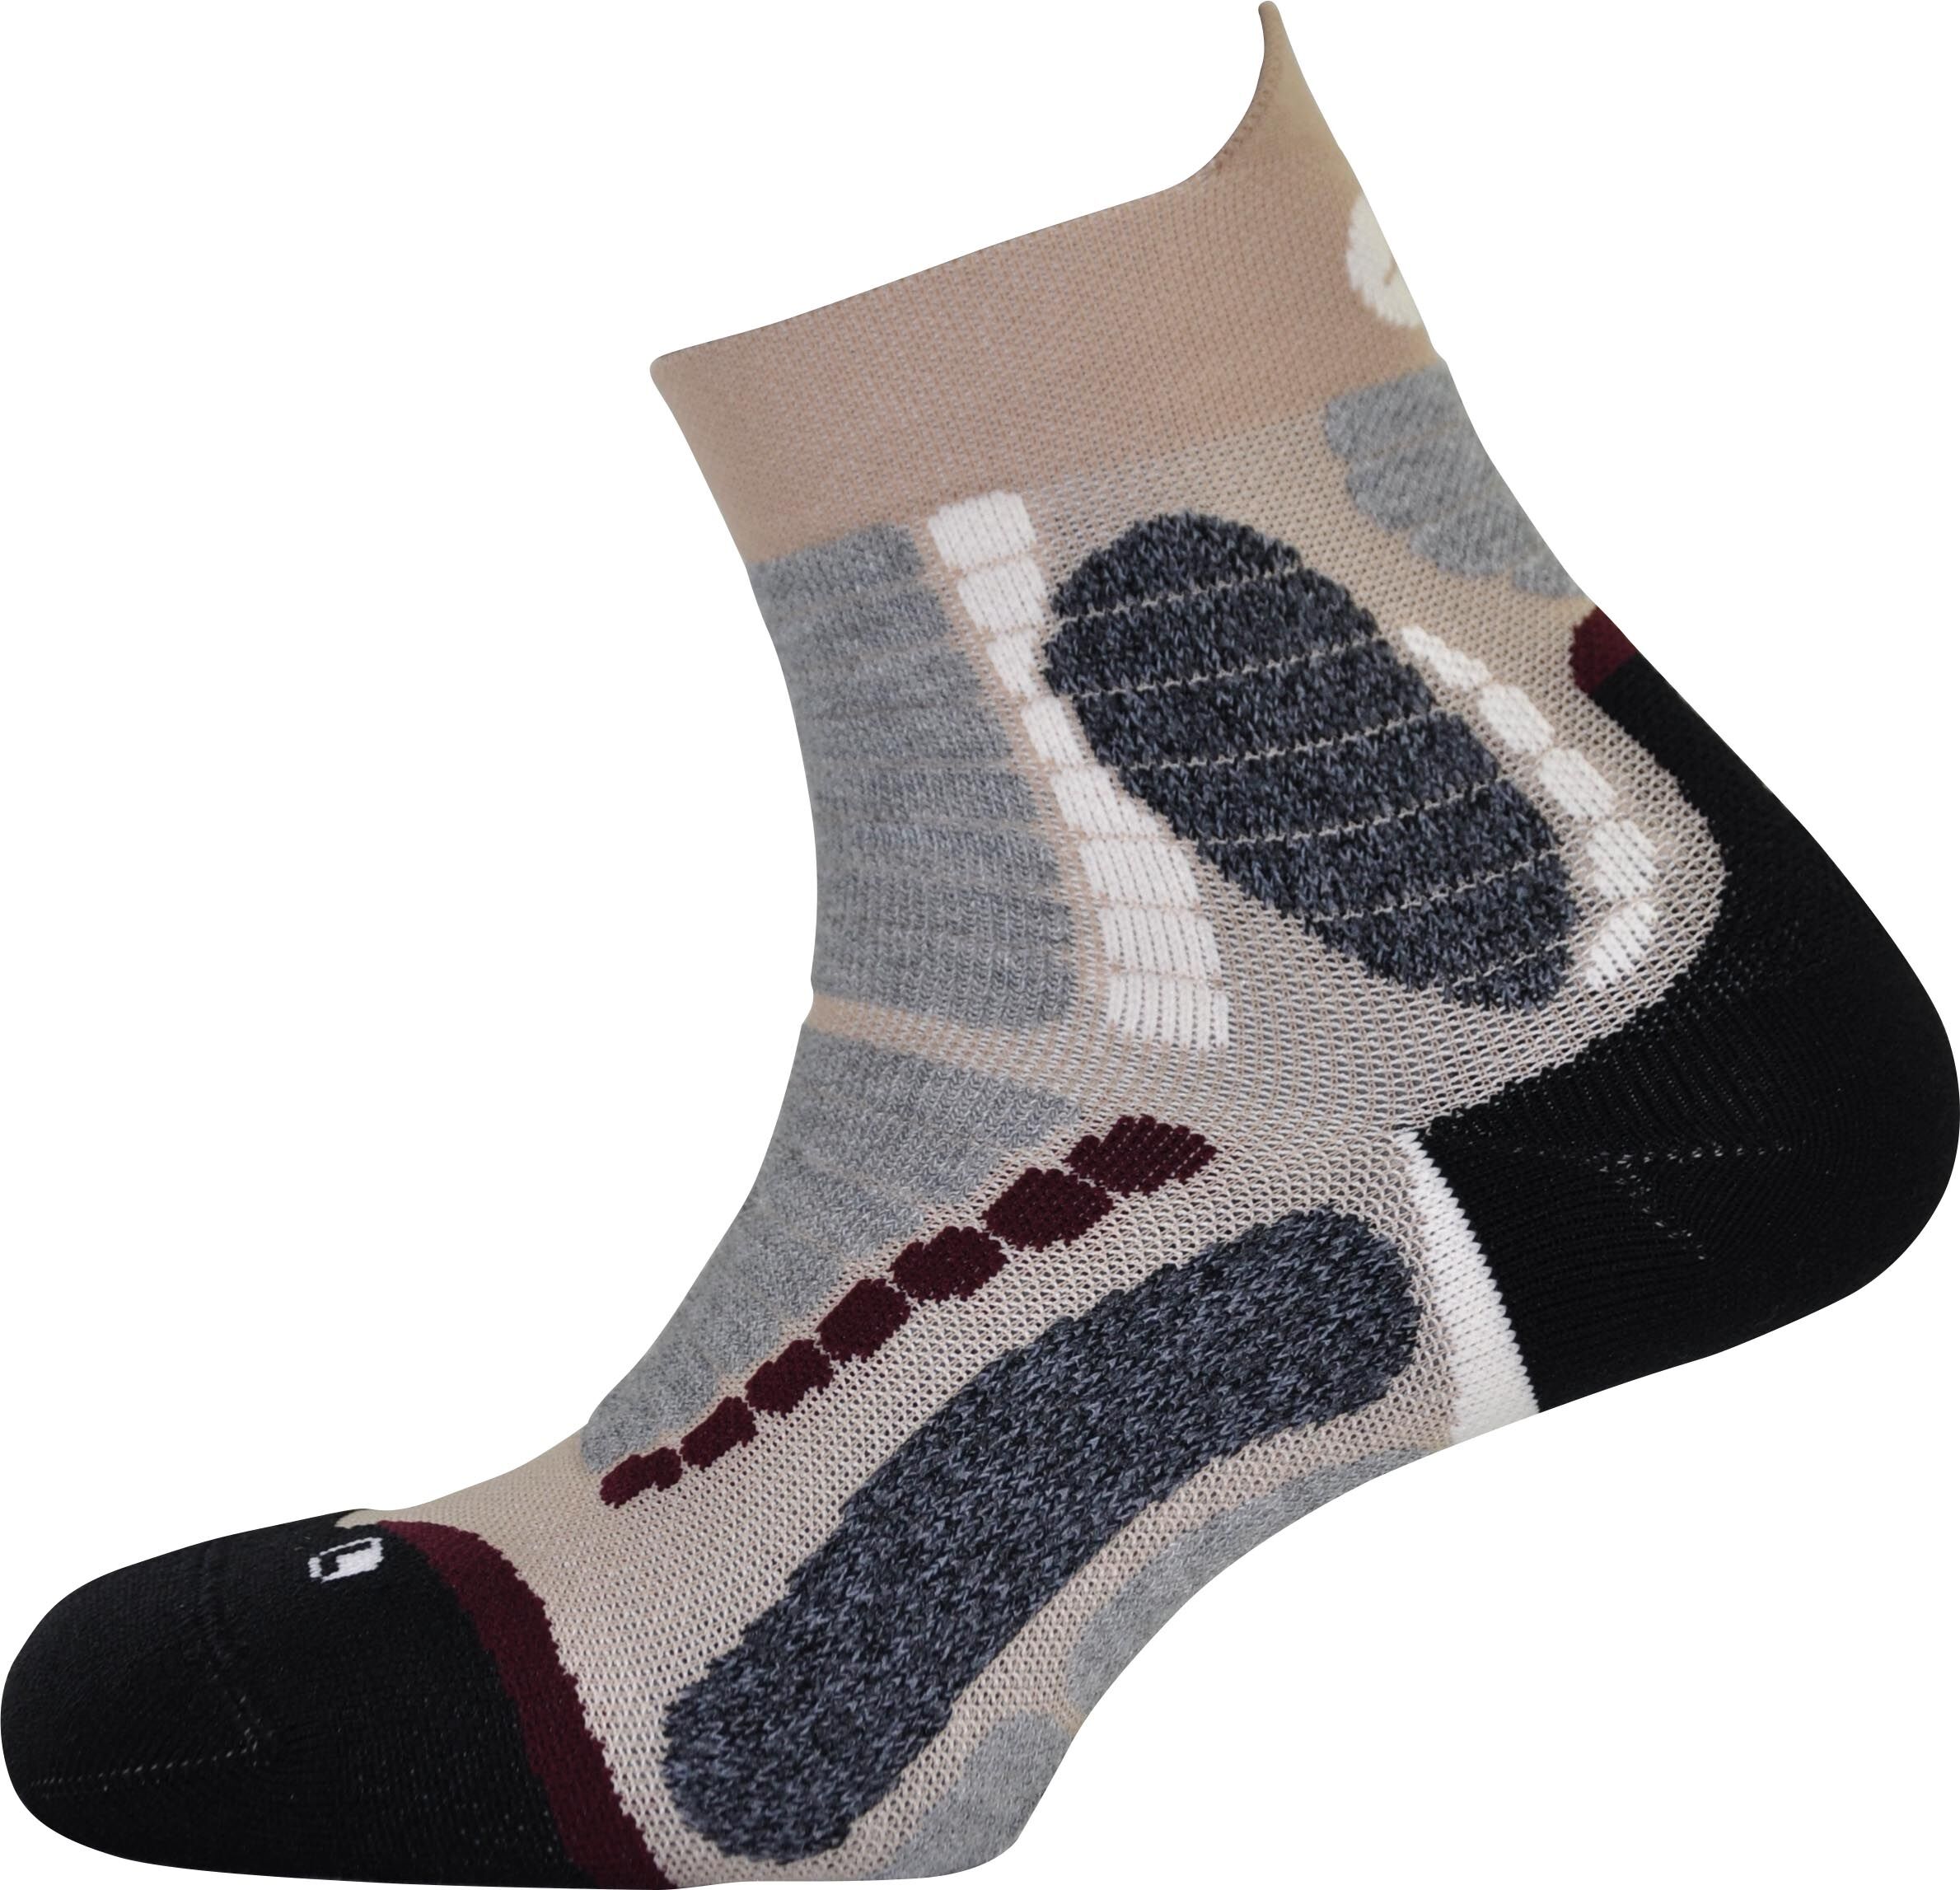 Monnet - Nordic Walking - Socks